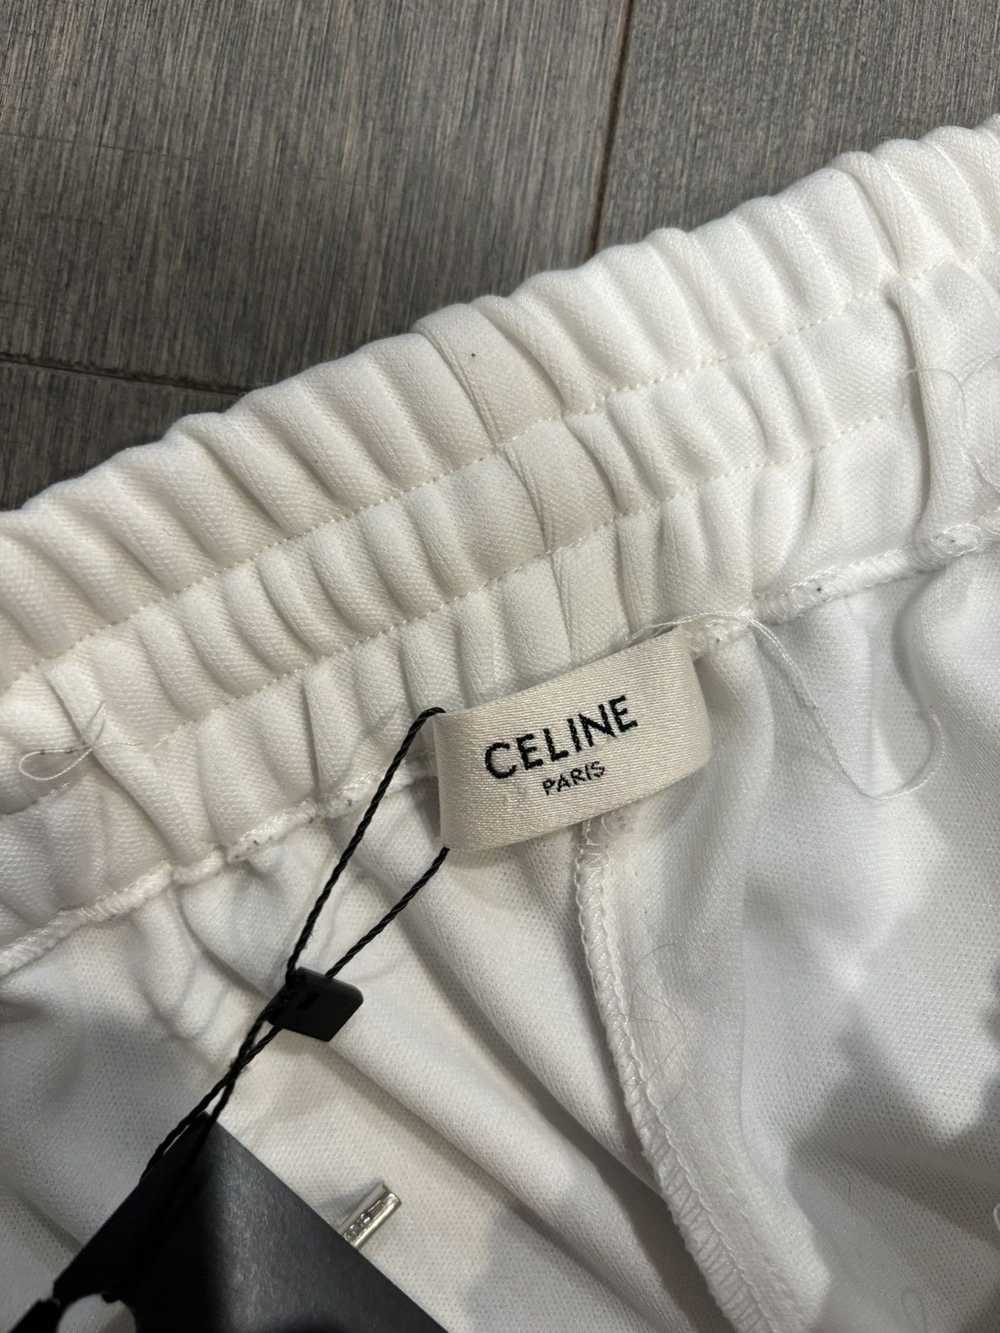 Celine Celine pants white medium - image 2